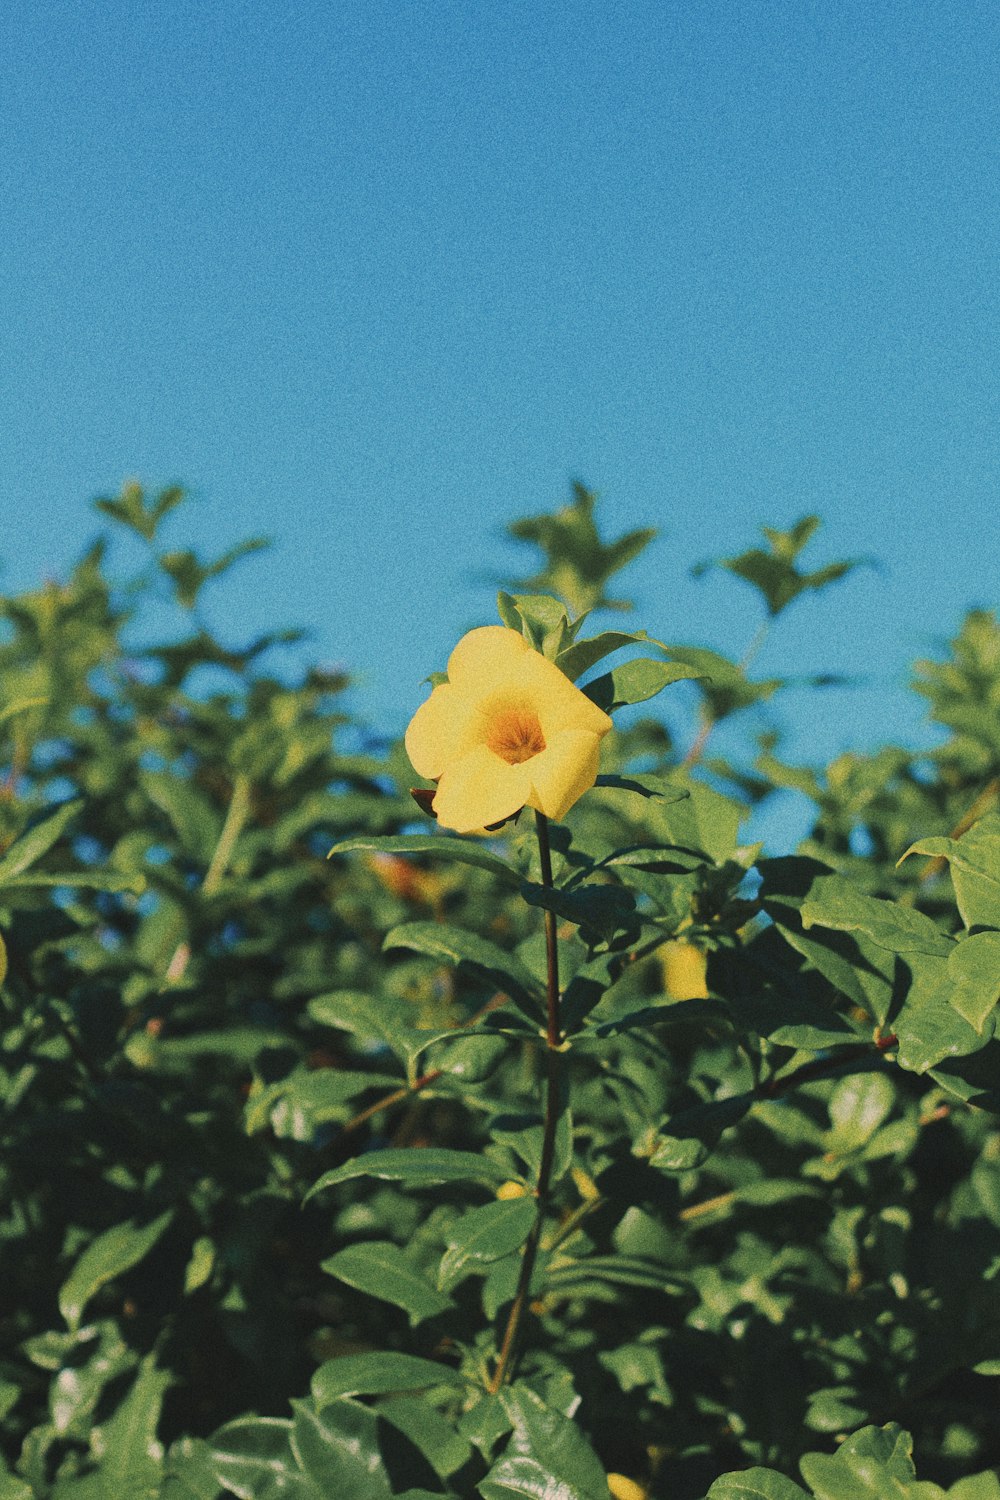 yellow bell flower